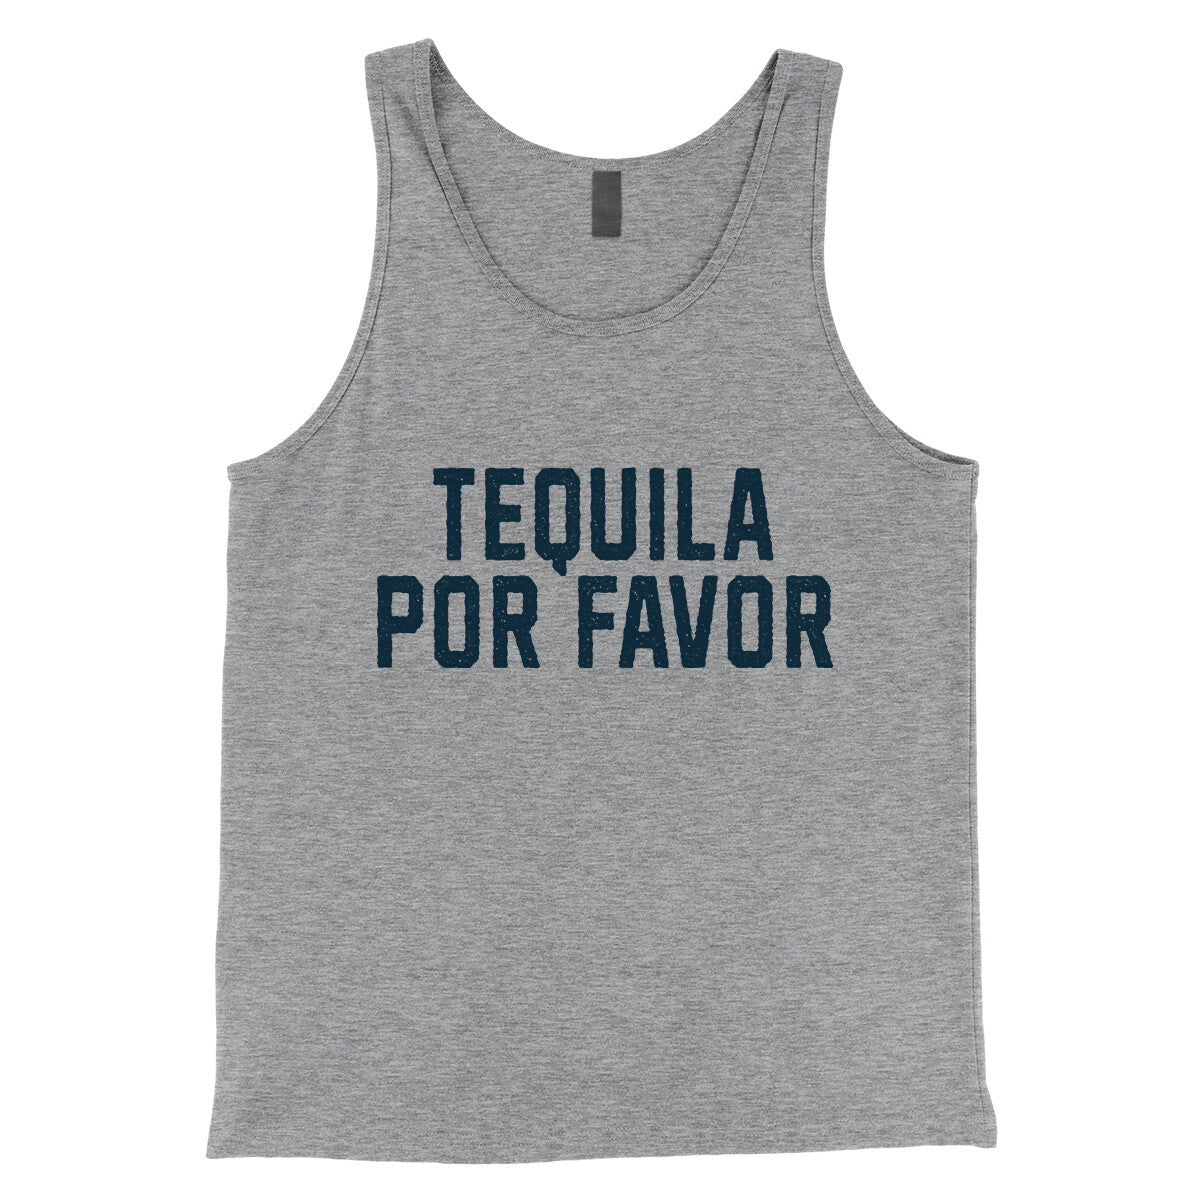 Tequila Por Favor in Athletic Heather Color